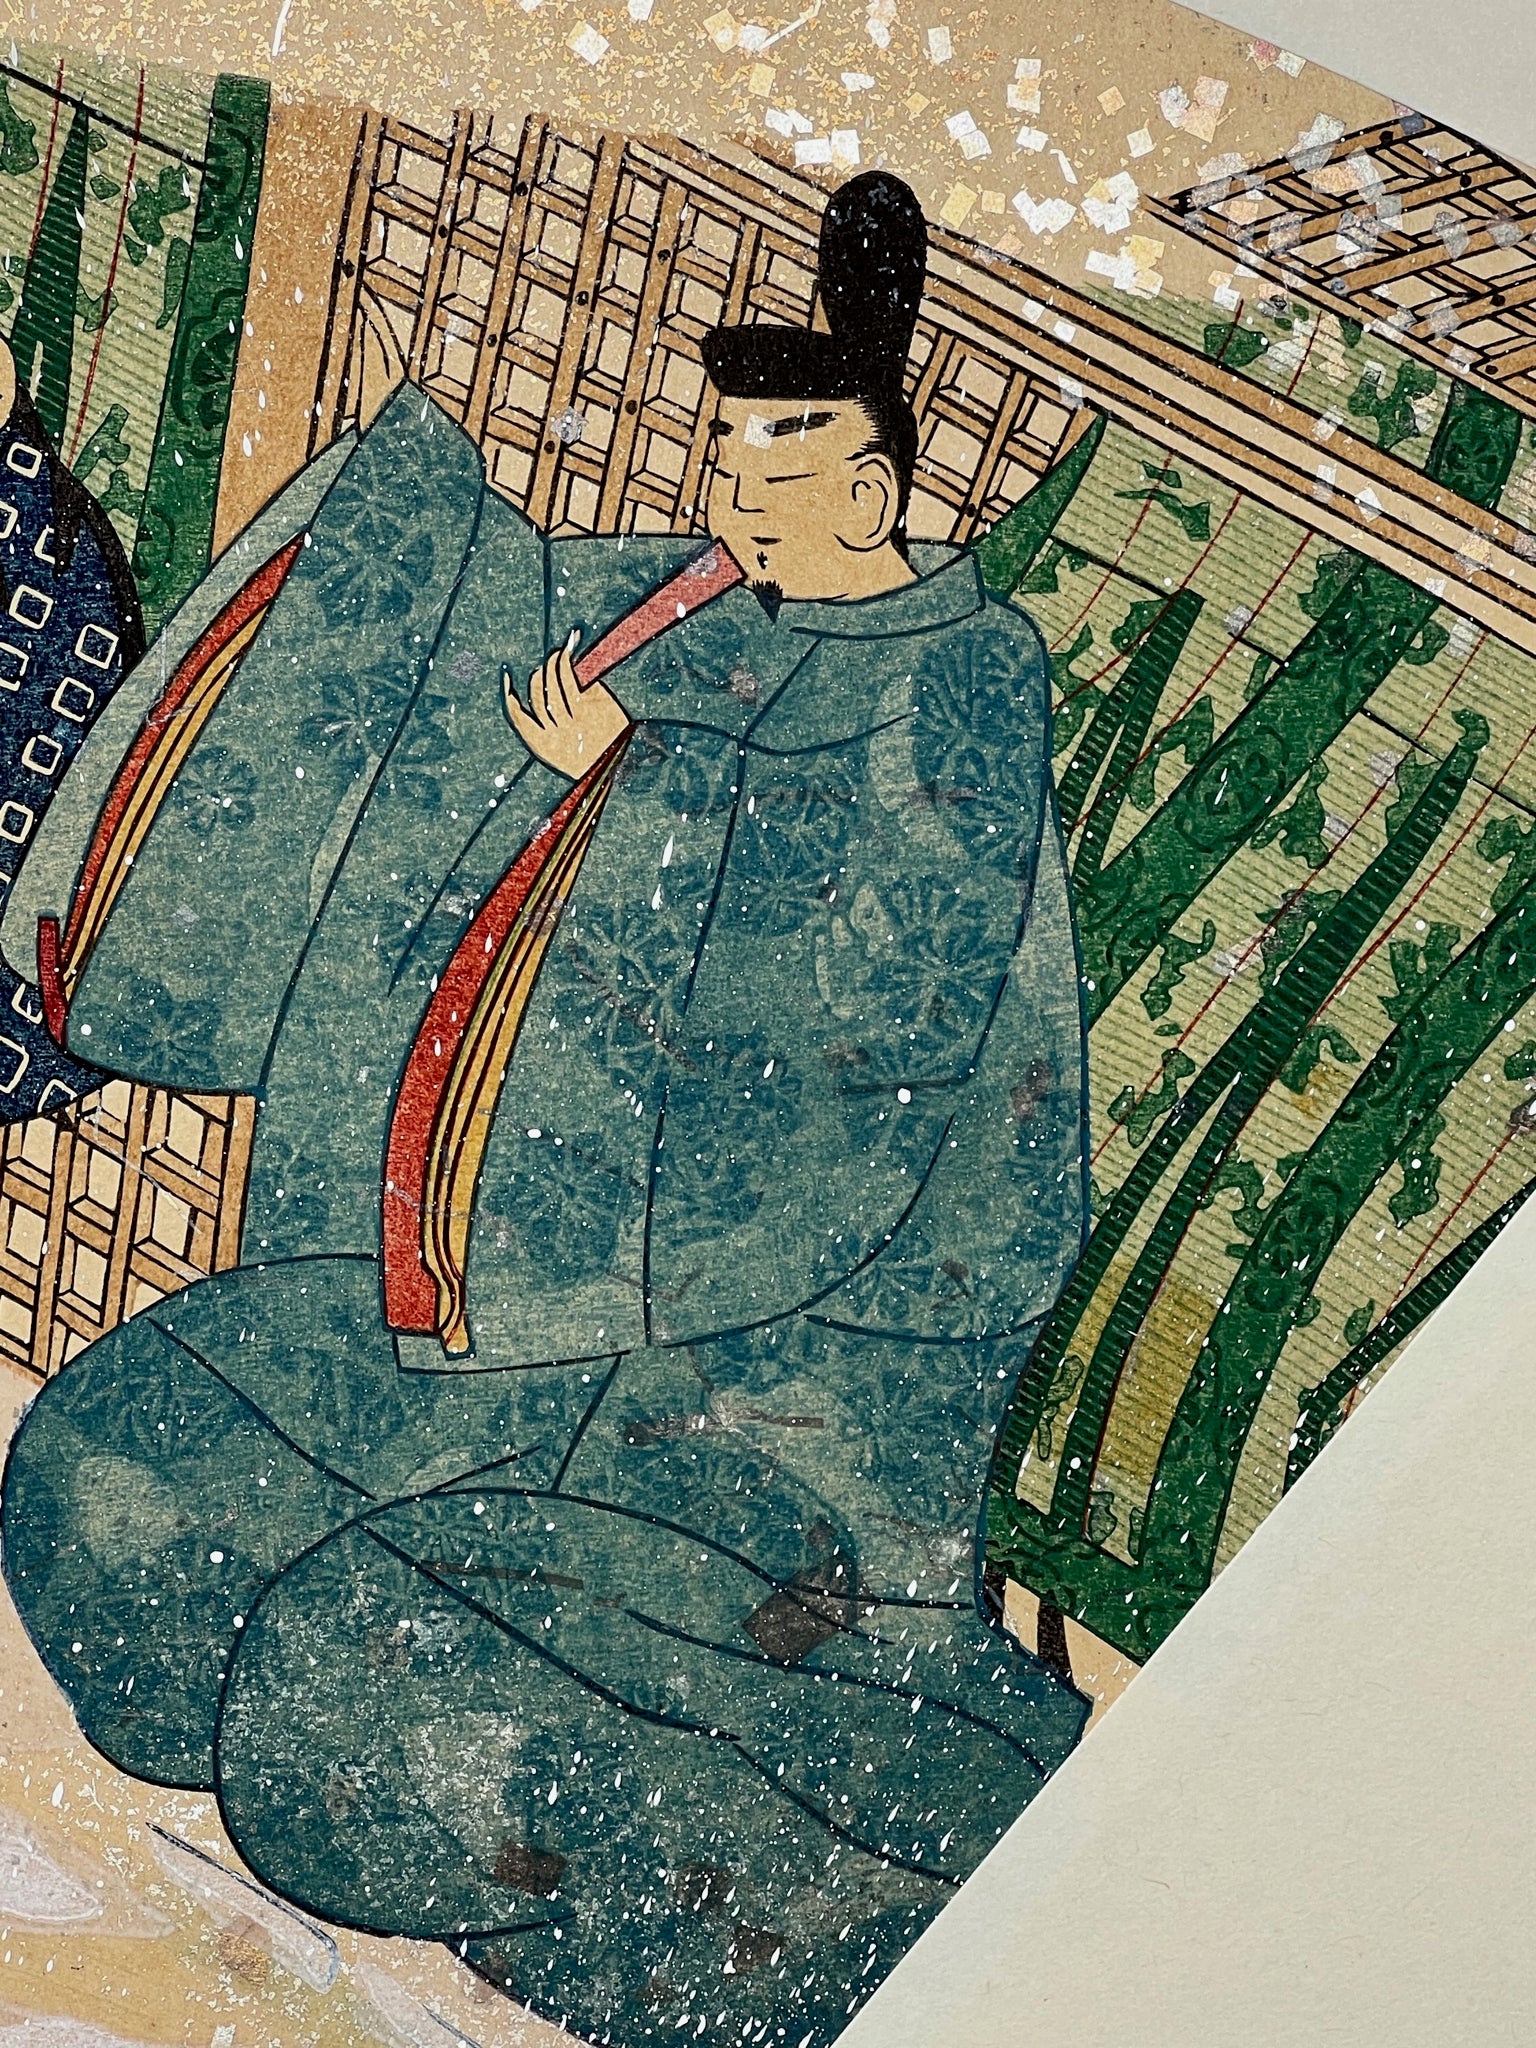 Estampe japonaise en forme d'éventail parsemée de fragments d'or et d'argent, matin neigeux, gros plan homme en bleu tenant un éventail.